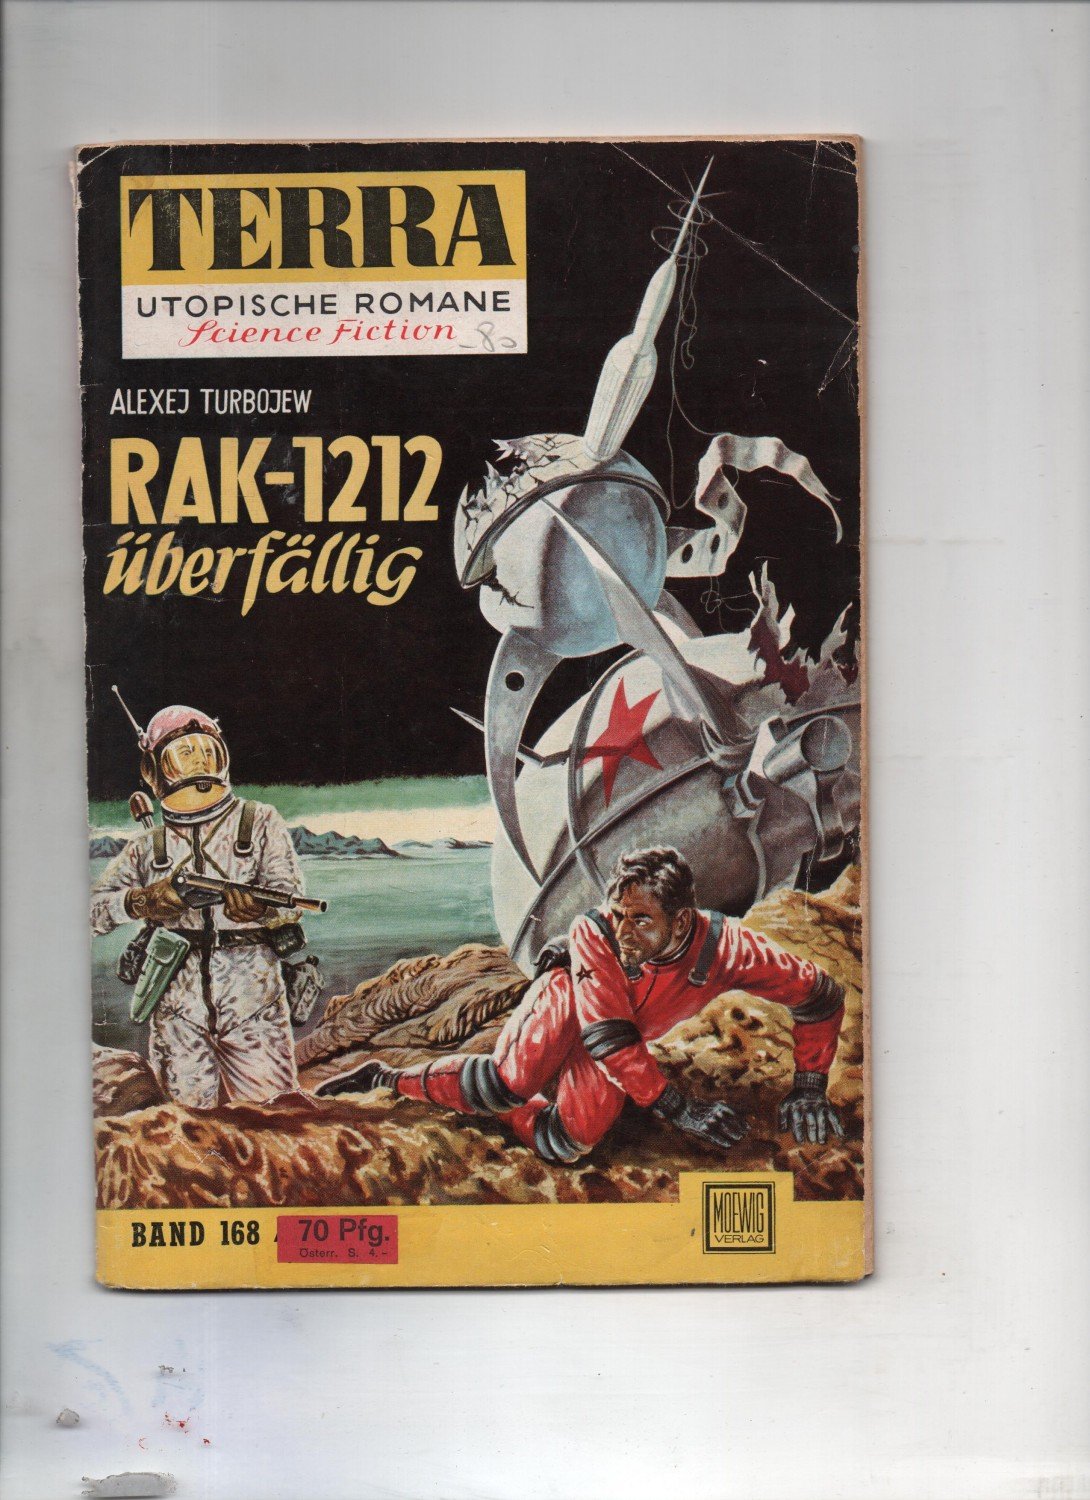 Terra Utopische Romane aus dem Nummernbereich 100-199 zur Auswahl in Z2